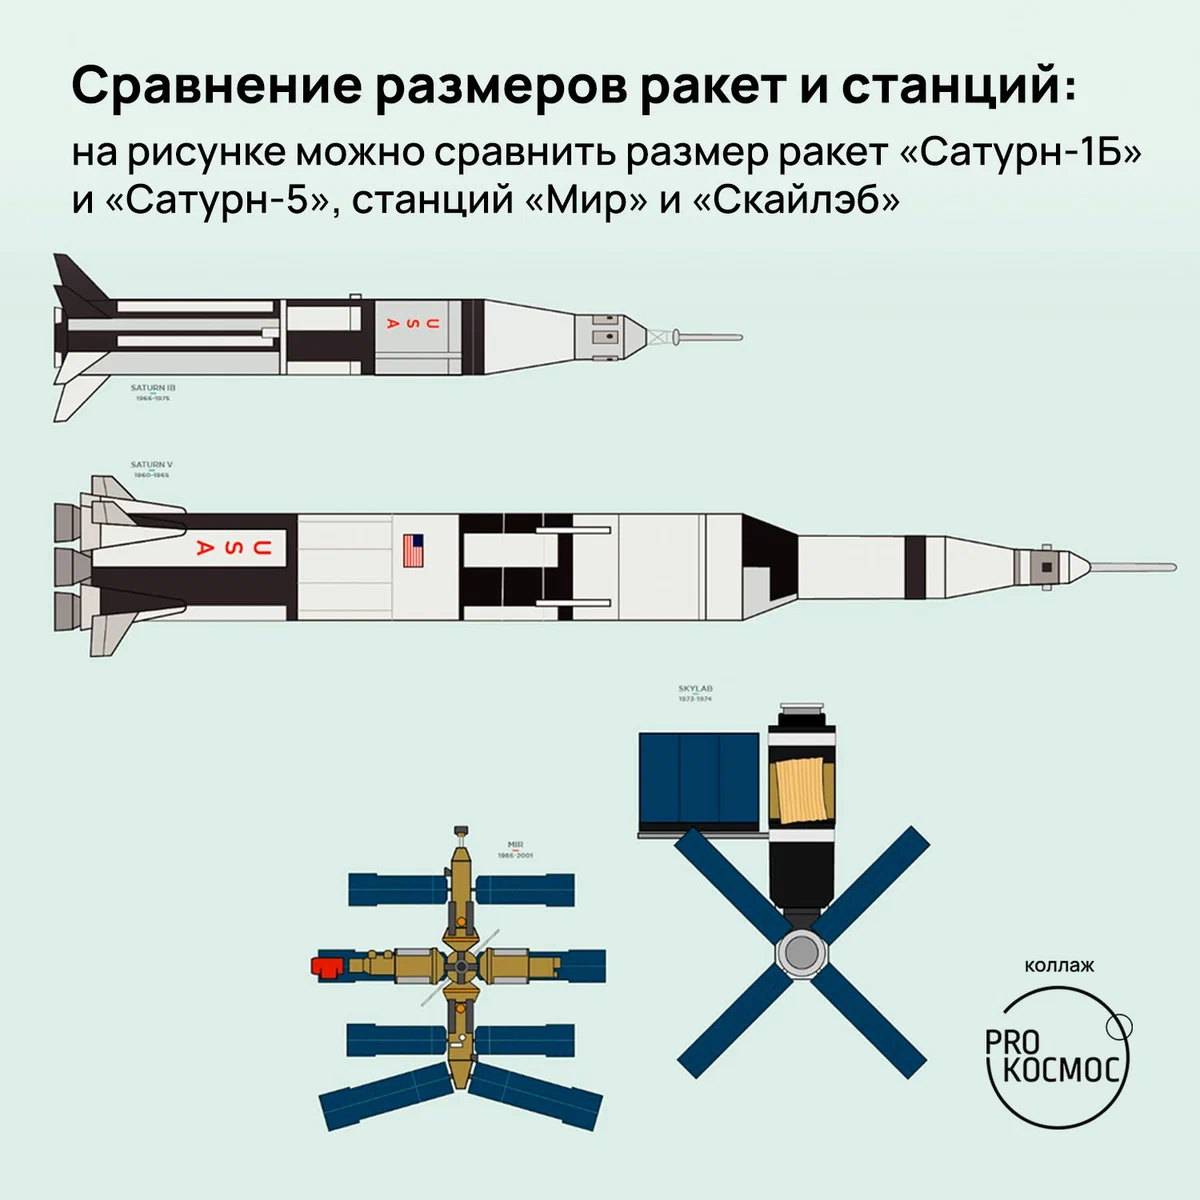 Первые космические забастовщики: последний экипаж орбитальной станции «Скайлэб» height=1200px width=1200px